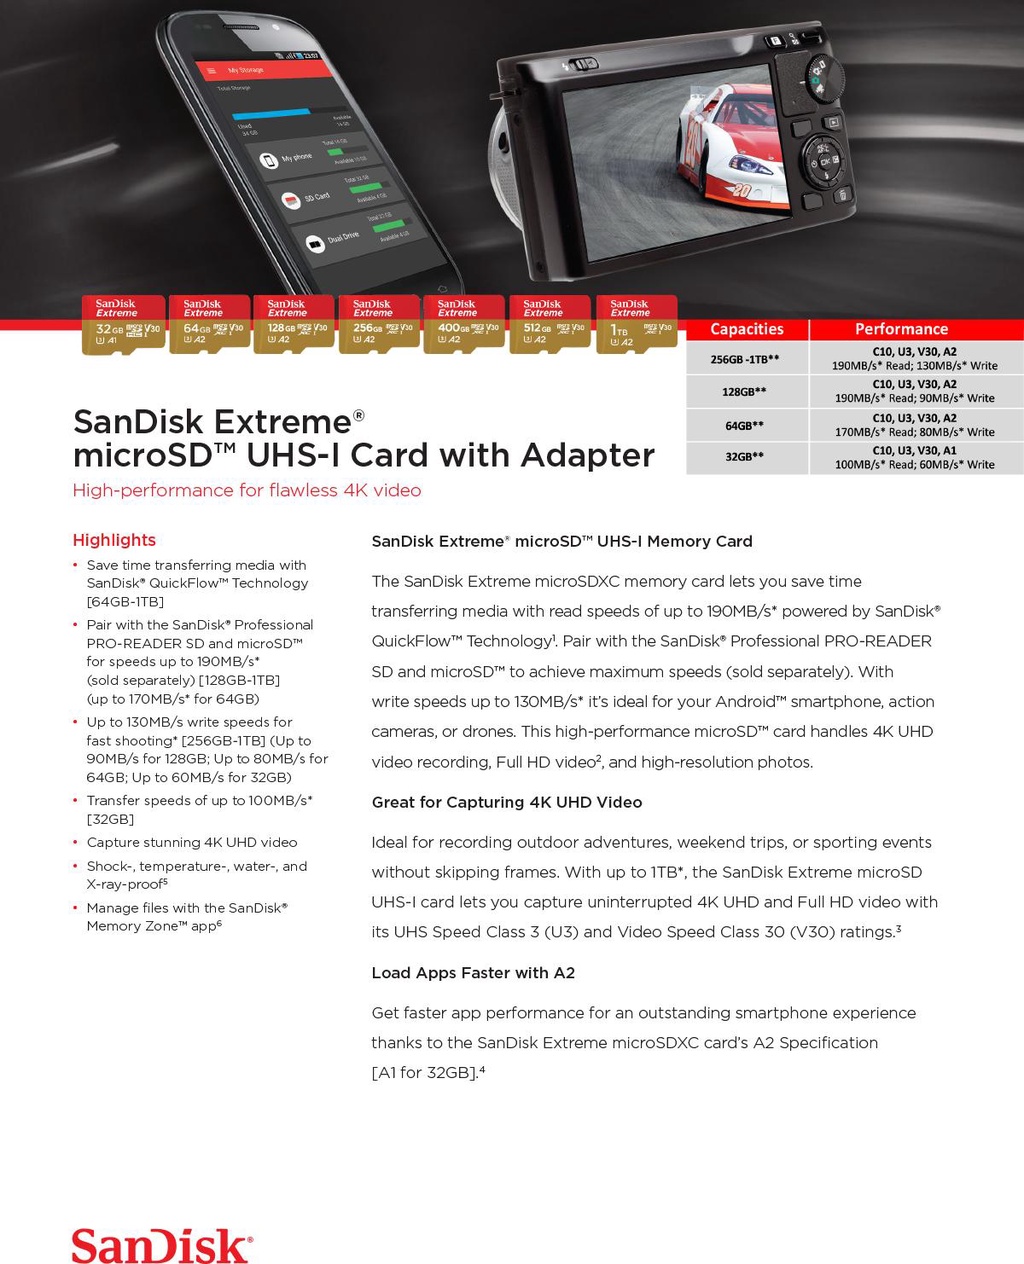 ข้อมูลเกี่ยวกับ SanDisk Extreme microSDXC Card V30 U3 64GB 170MB/s R, 80MB/s W (SDSQXAH-064G-GN6MN*1) Mobile Gaming , Nintendo Switch ประกัน Synnex ตลอดอายุการใช้งาน